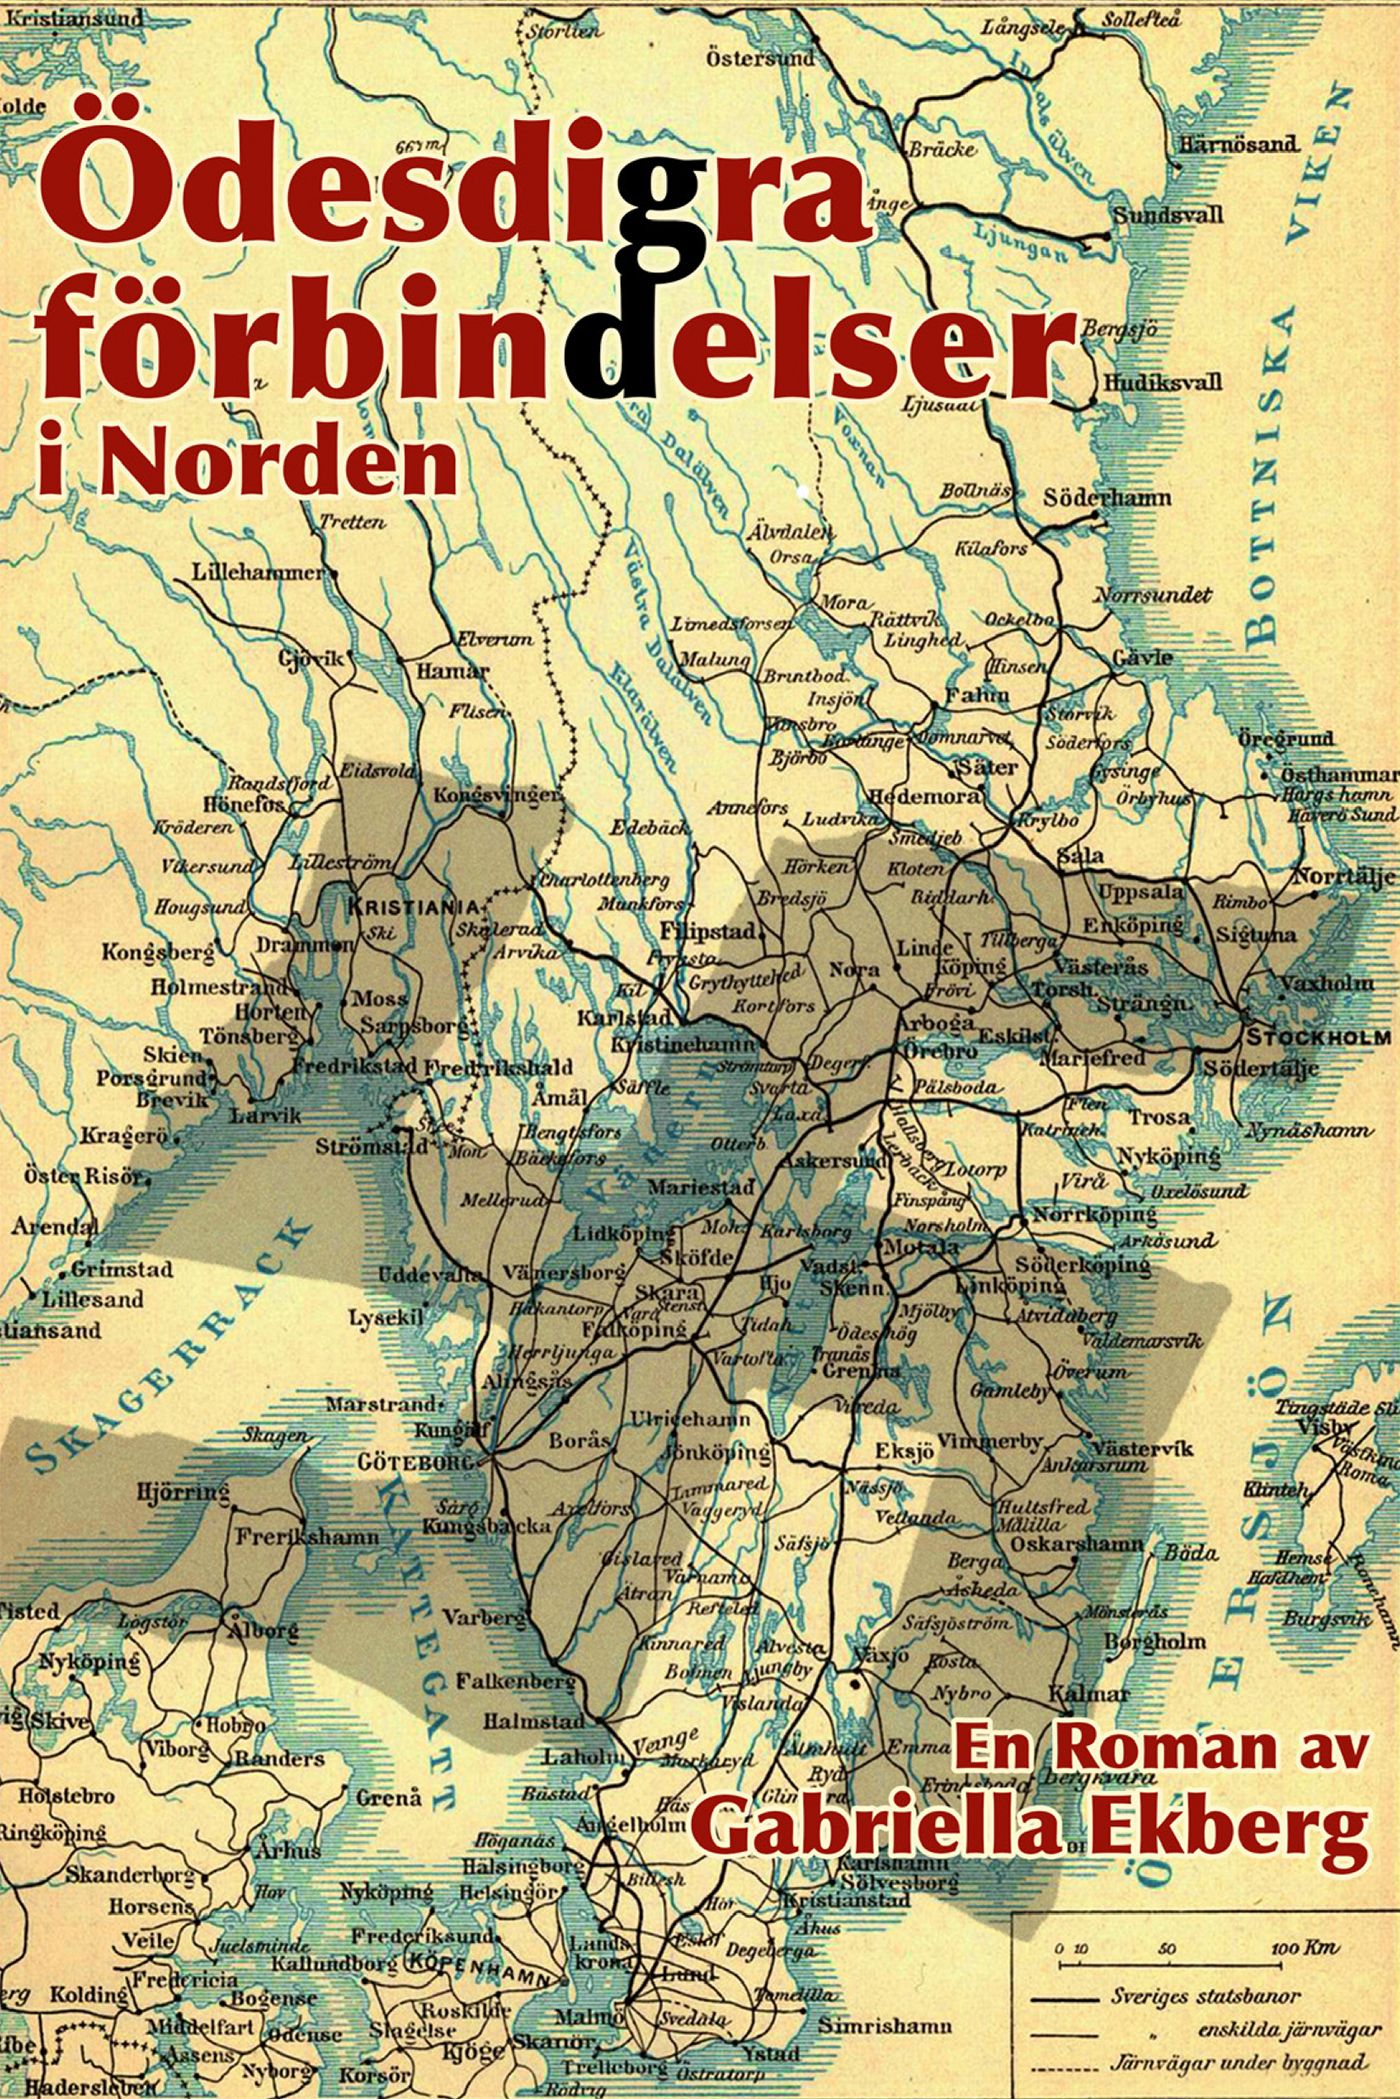 Ödesdigra förbindelser i Norden, eBook by Gabriella Ekberg